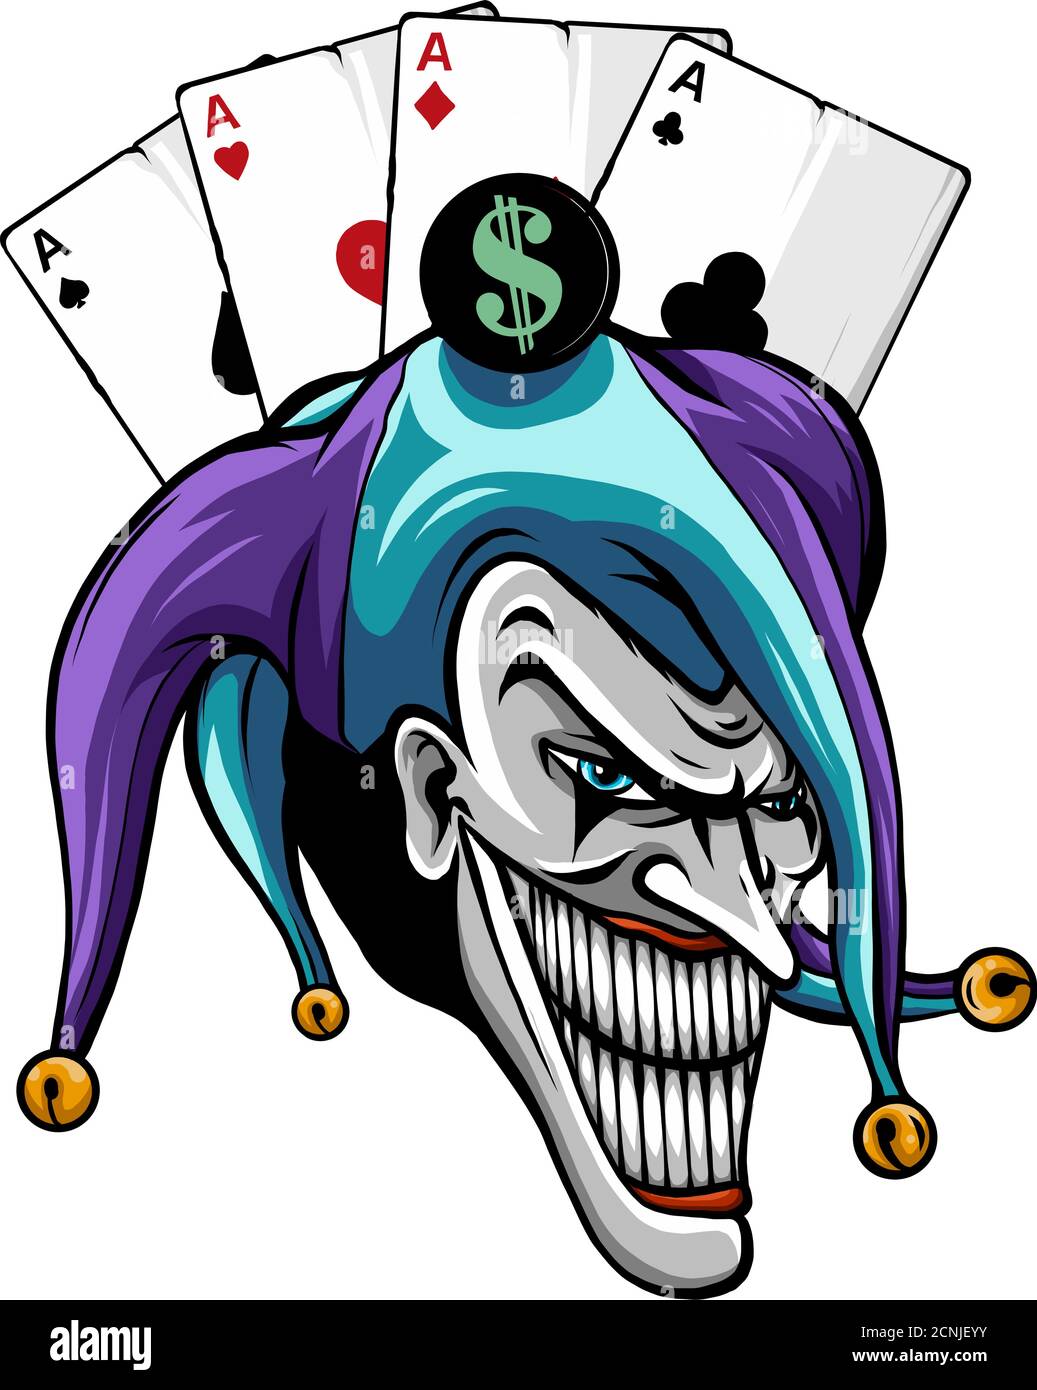 Lachend wütend Joker, Charakter, Joker Kopf, Gesicht Horror und verrückt Wahnsinn, für Ihr Design, Vektor-Illustration Stock Vektor